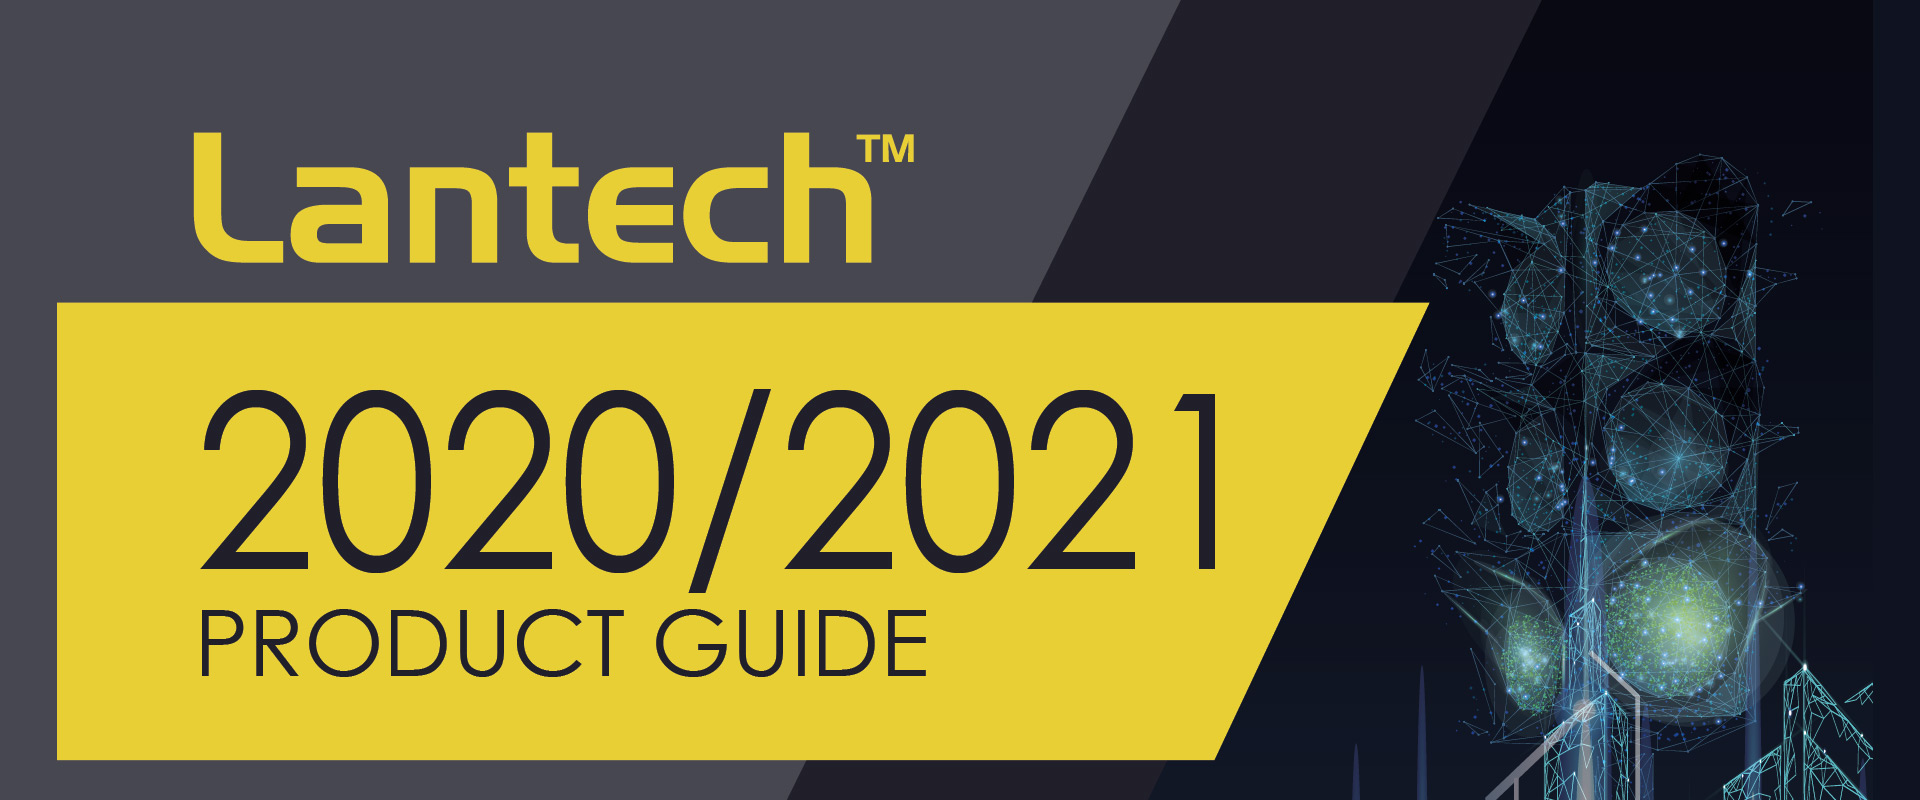 Product Guide 2020 - katalog produktów i prezentacja firmy Lantech